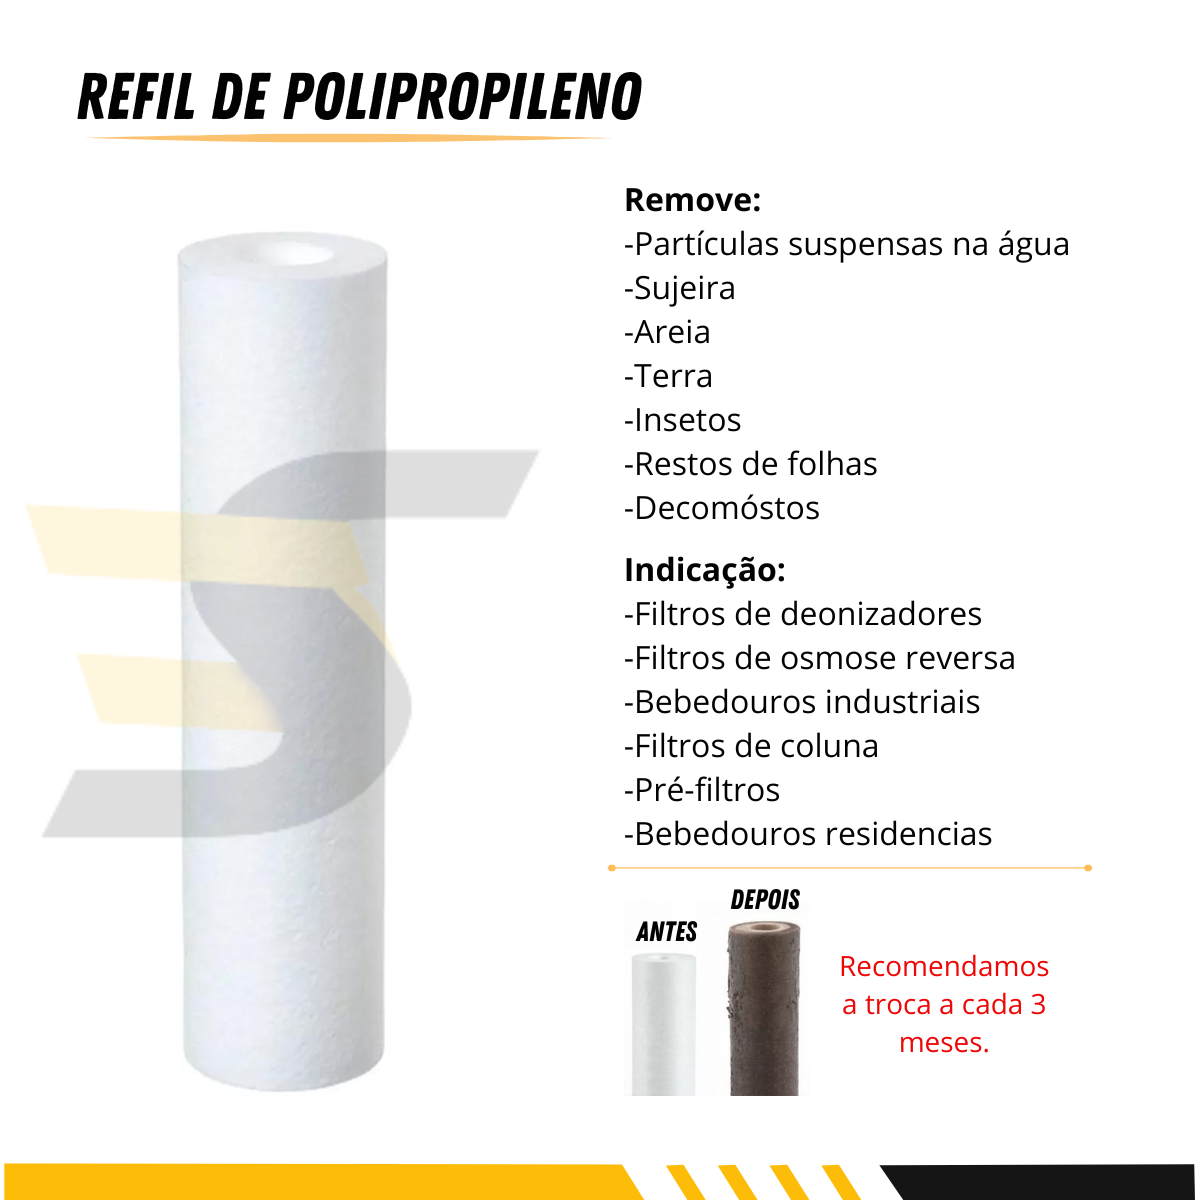 Refil Polipropileno para Filtro Snelfilter Sn-3103/pp-5m 5 Micra 5un - 2